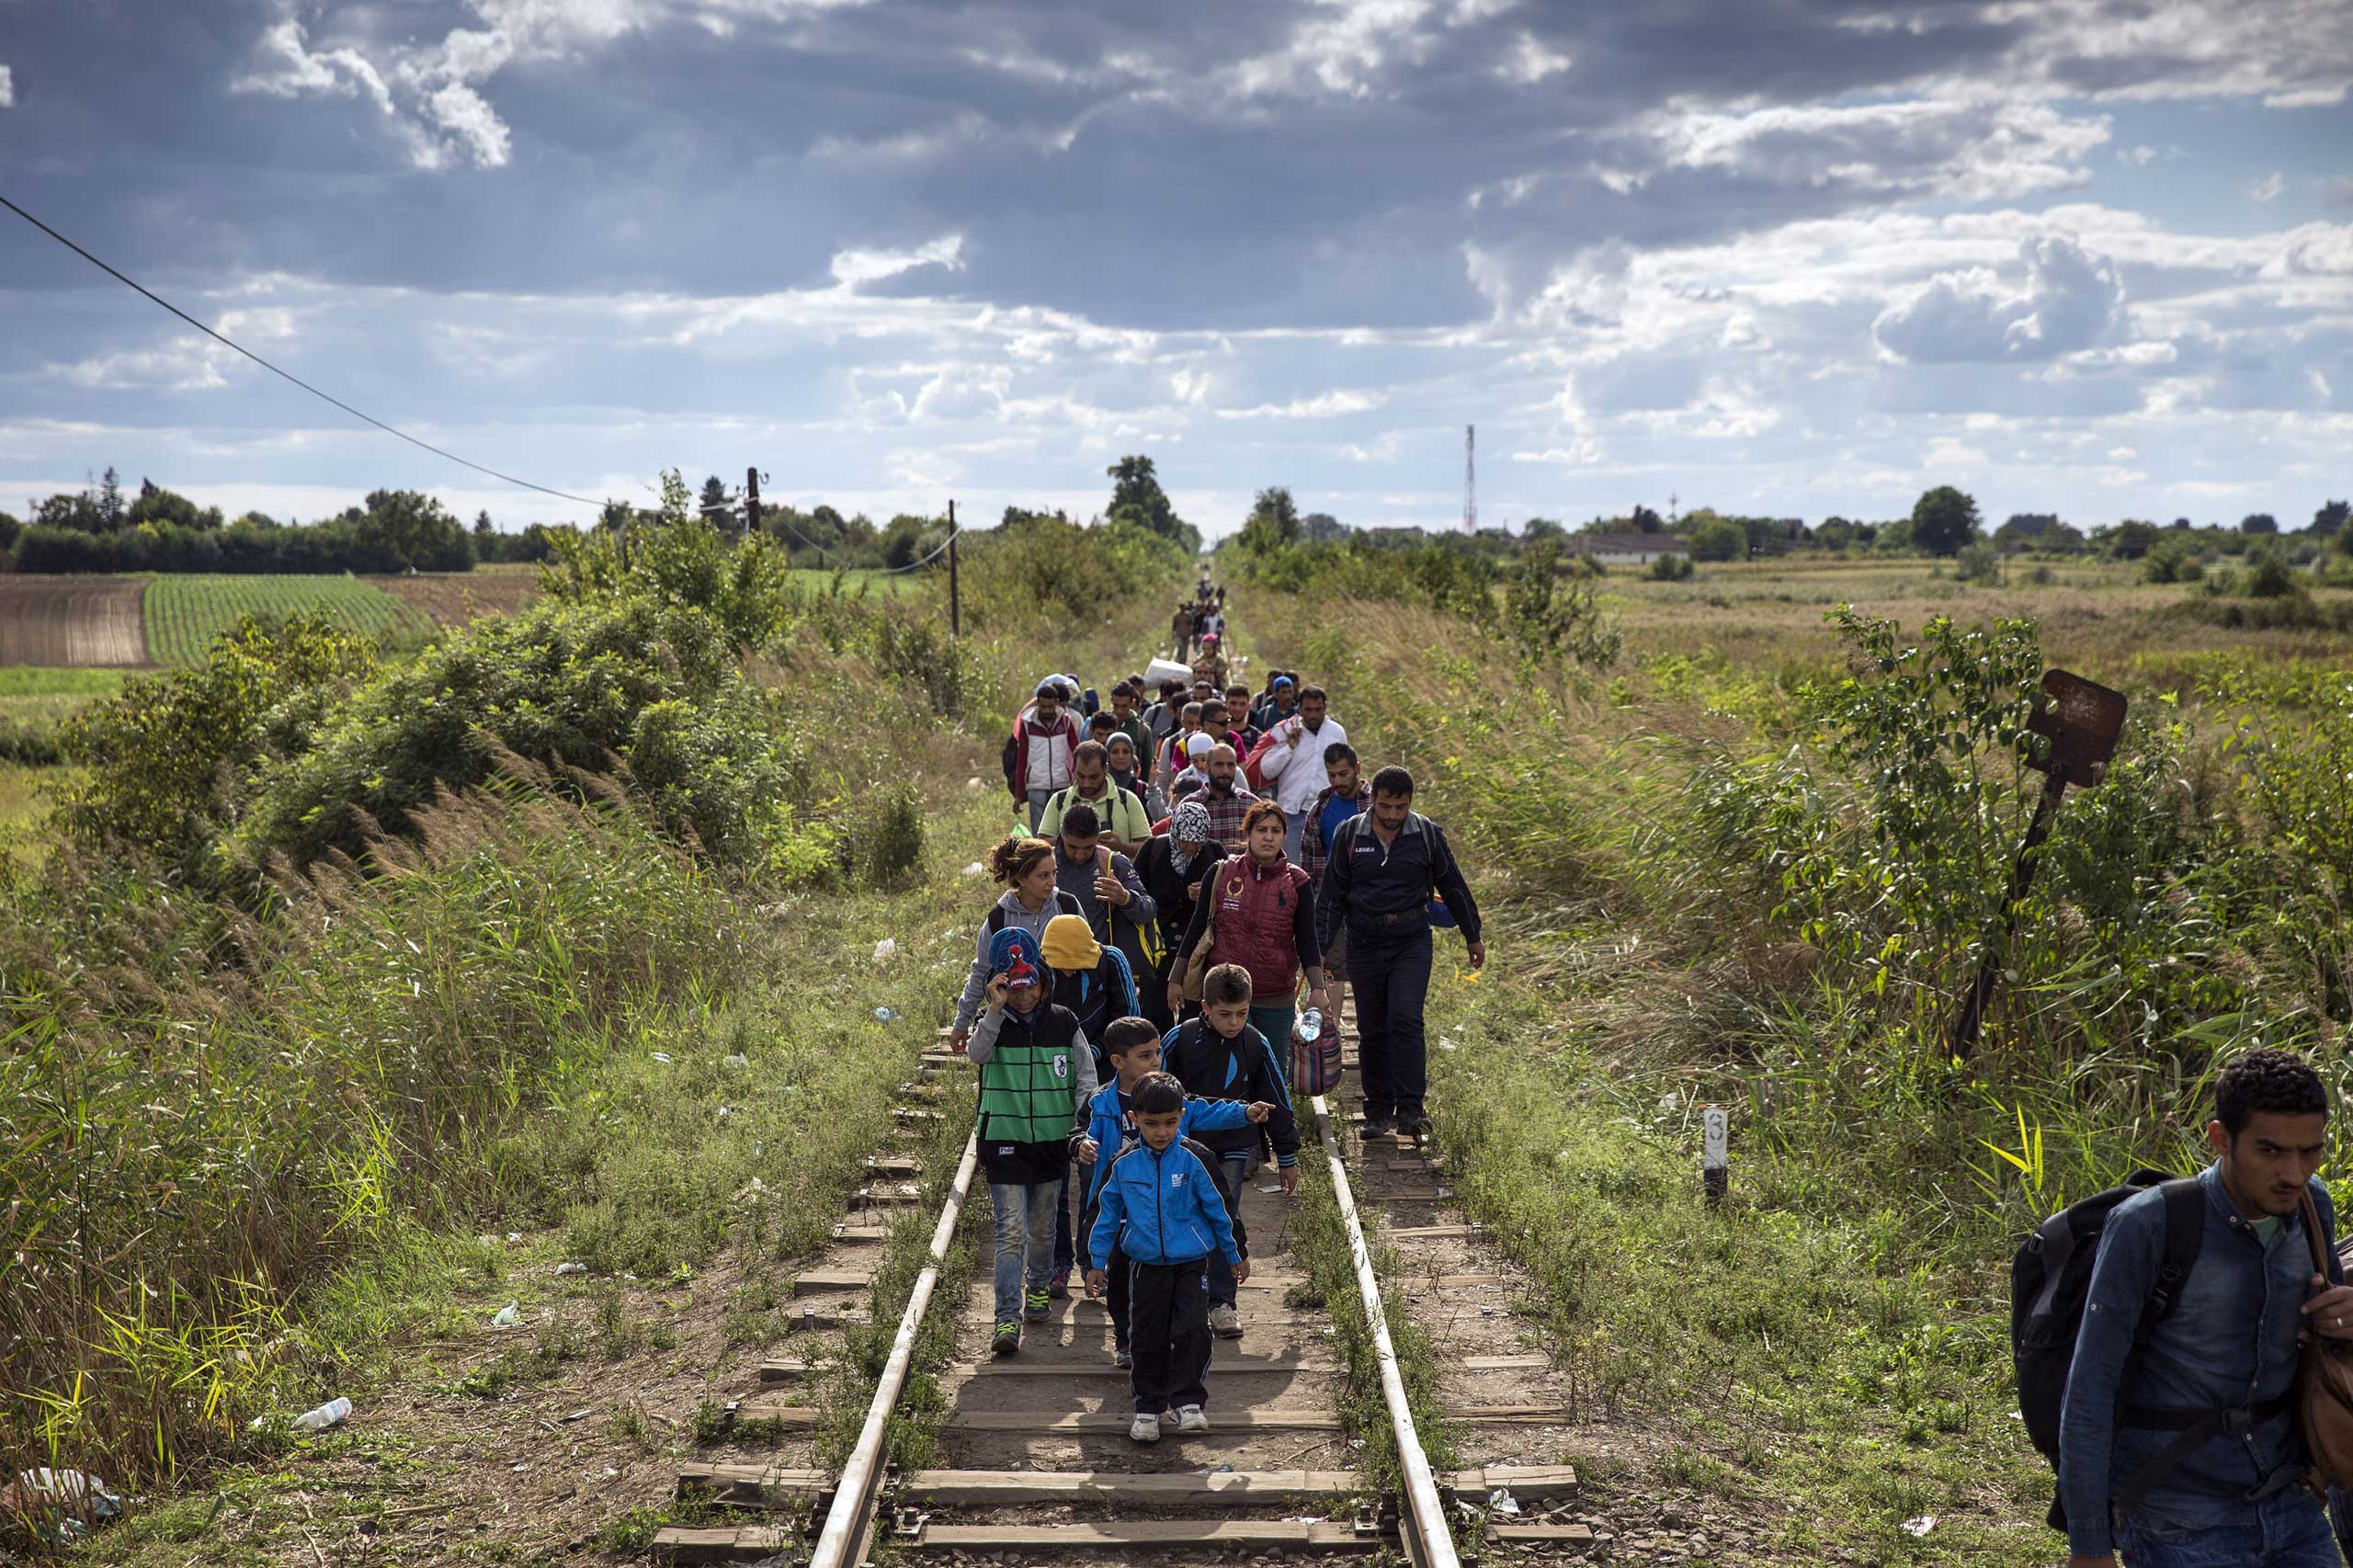 Σοβαρό ρήγμα στο εσωτερικό της ΕΕ για πρόσφυγες-μετανάστες: 5 κράτη κλείνουν τα σύνορά τους – Τι λέει ο Τουσκ